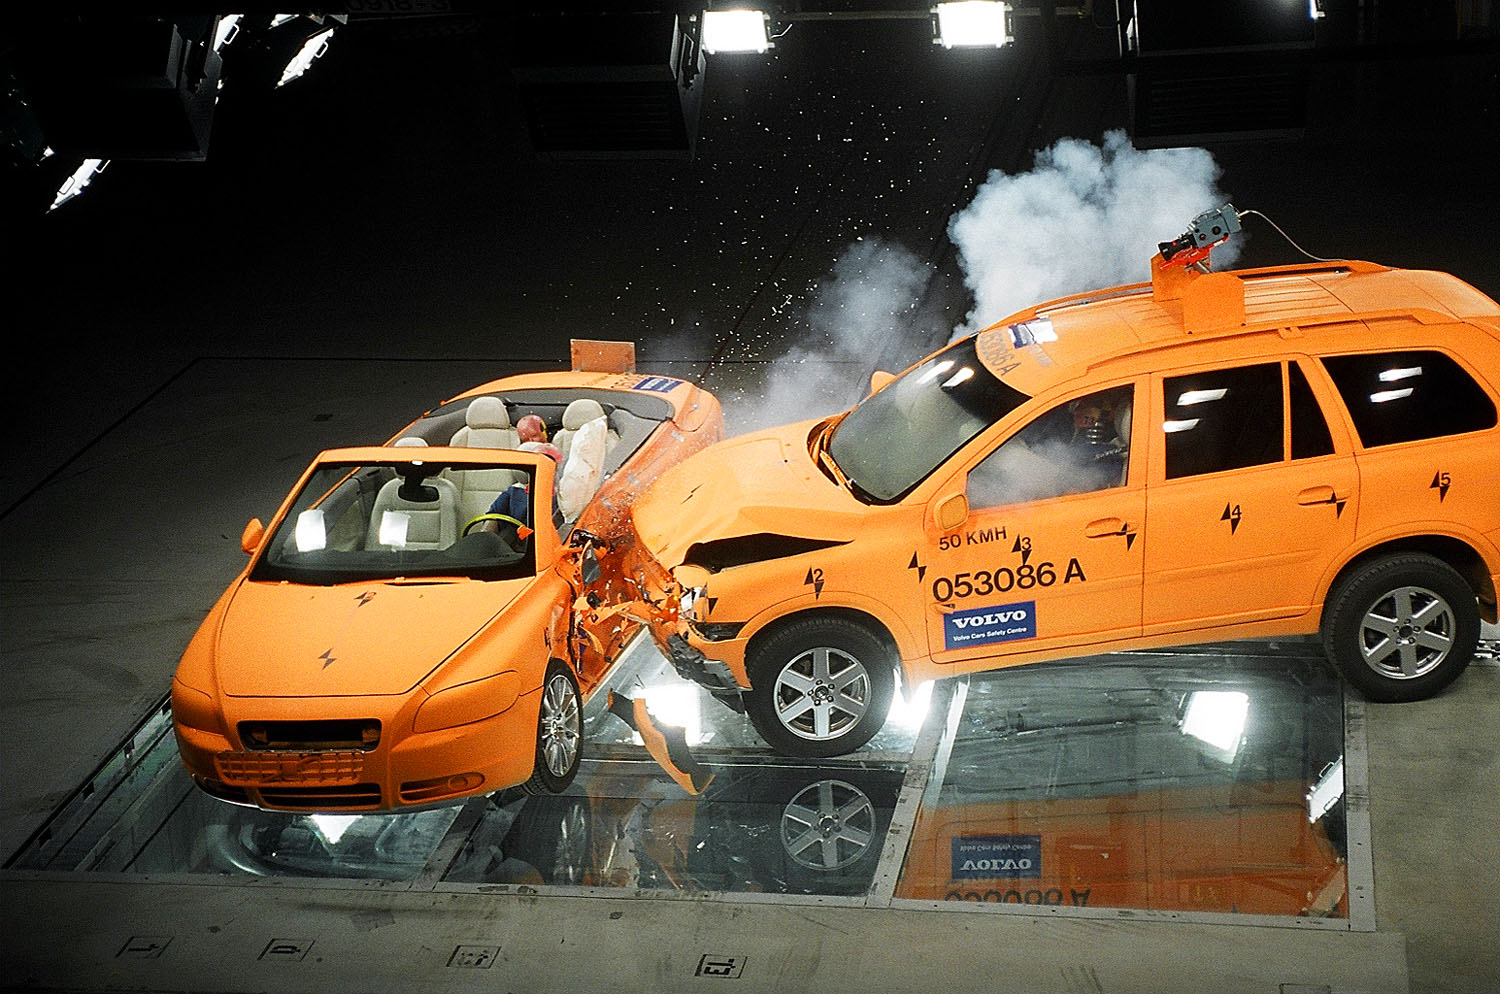 Kabrió és sportterepjáró ütközése a Volvo biztonságtechnikai központjában